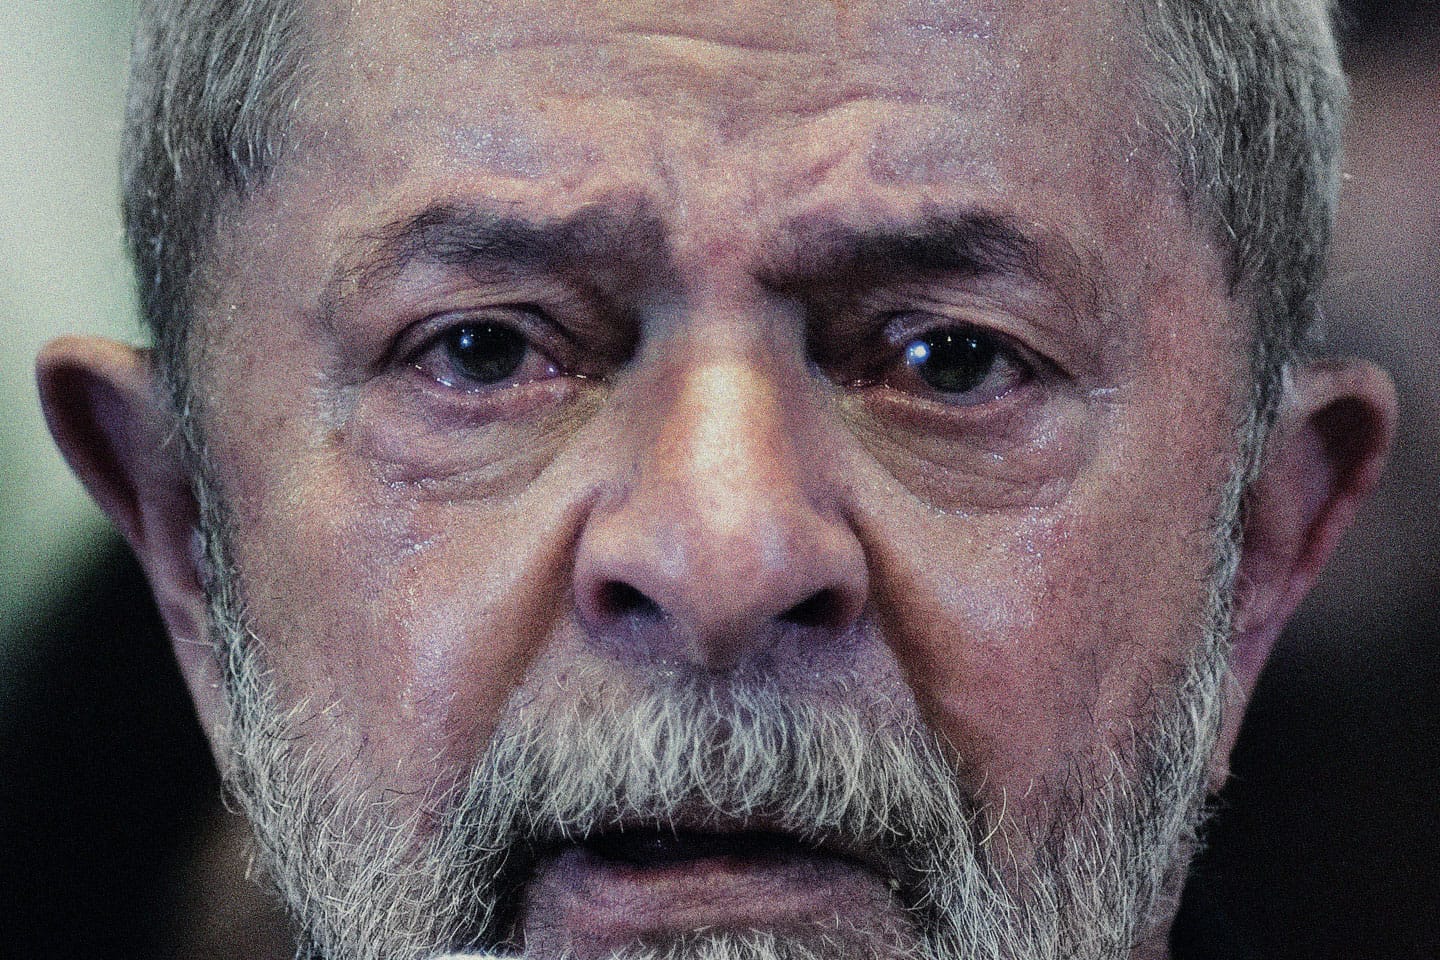 Saiba o real motivo sobre boatos de morte do presidente Lula. Entenda o que aconteceu; ‘Muito estranho’